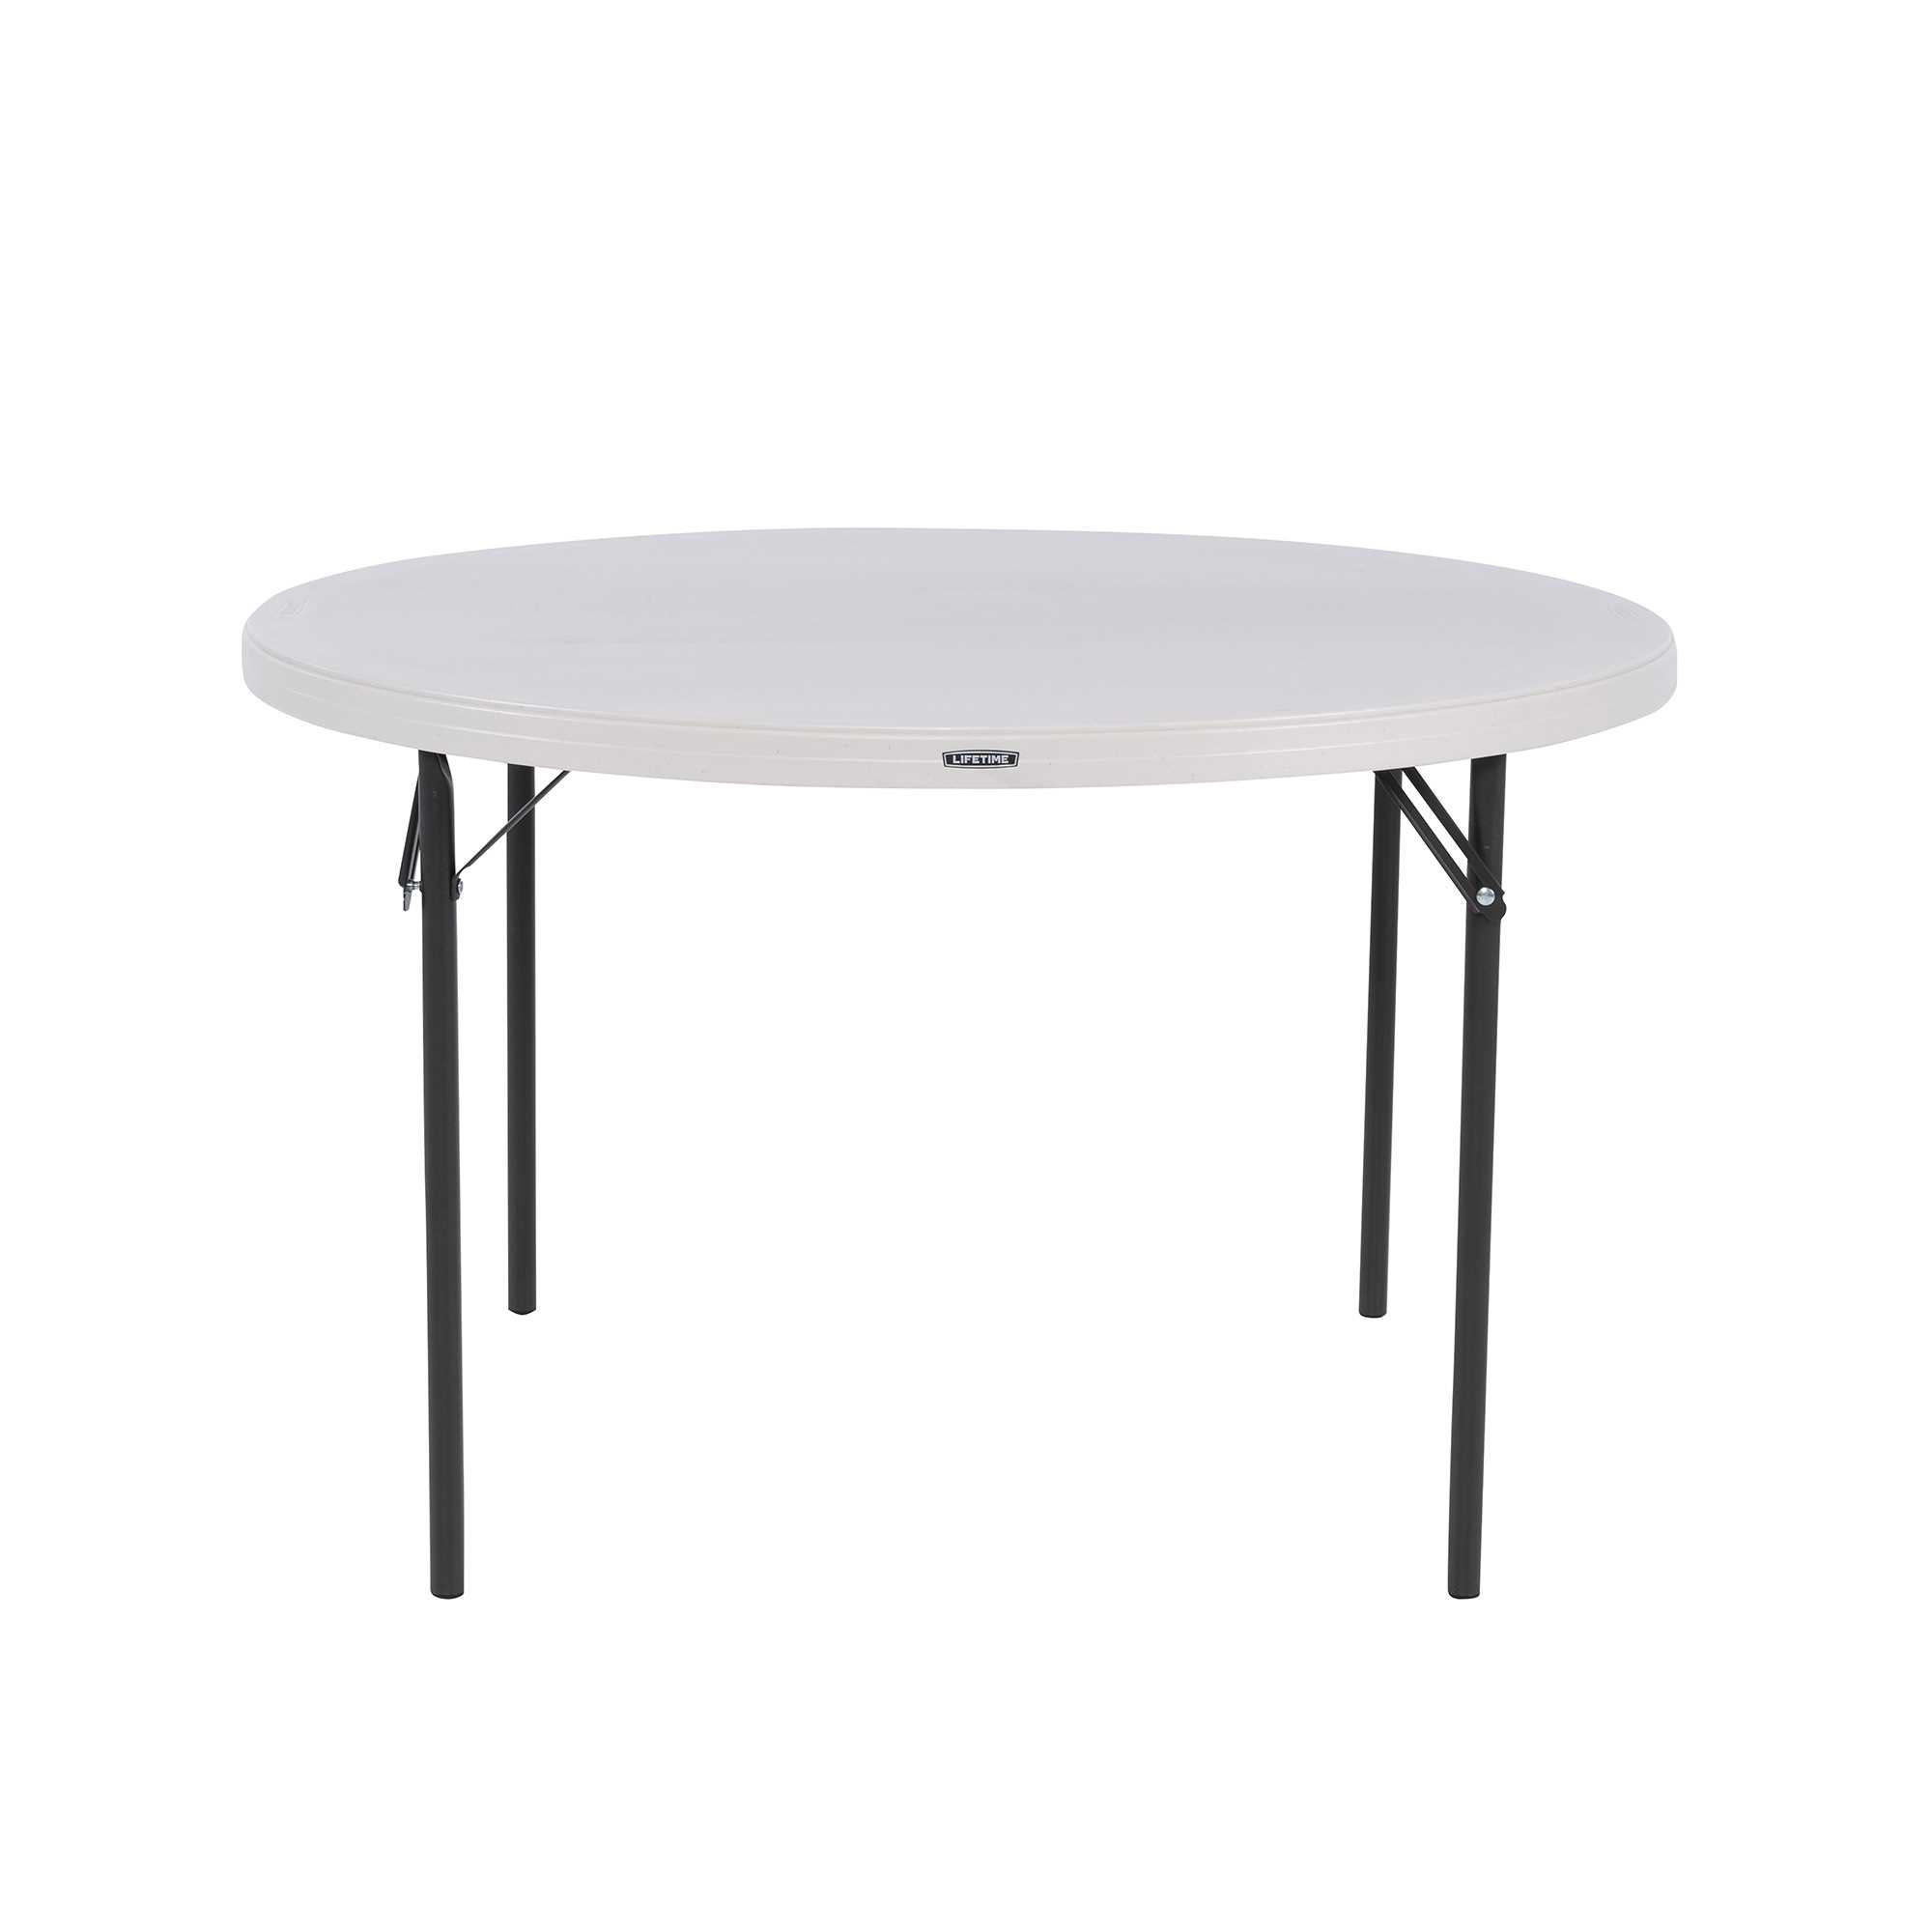 Table pliante rectangulaire 122cm (beige) NESTING / 4 personnes